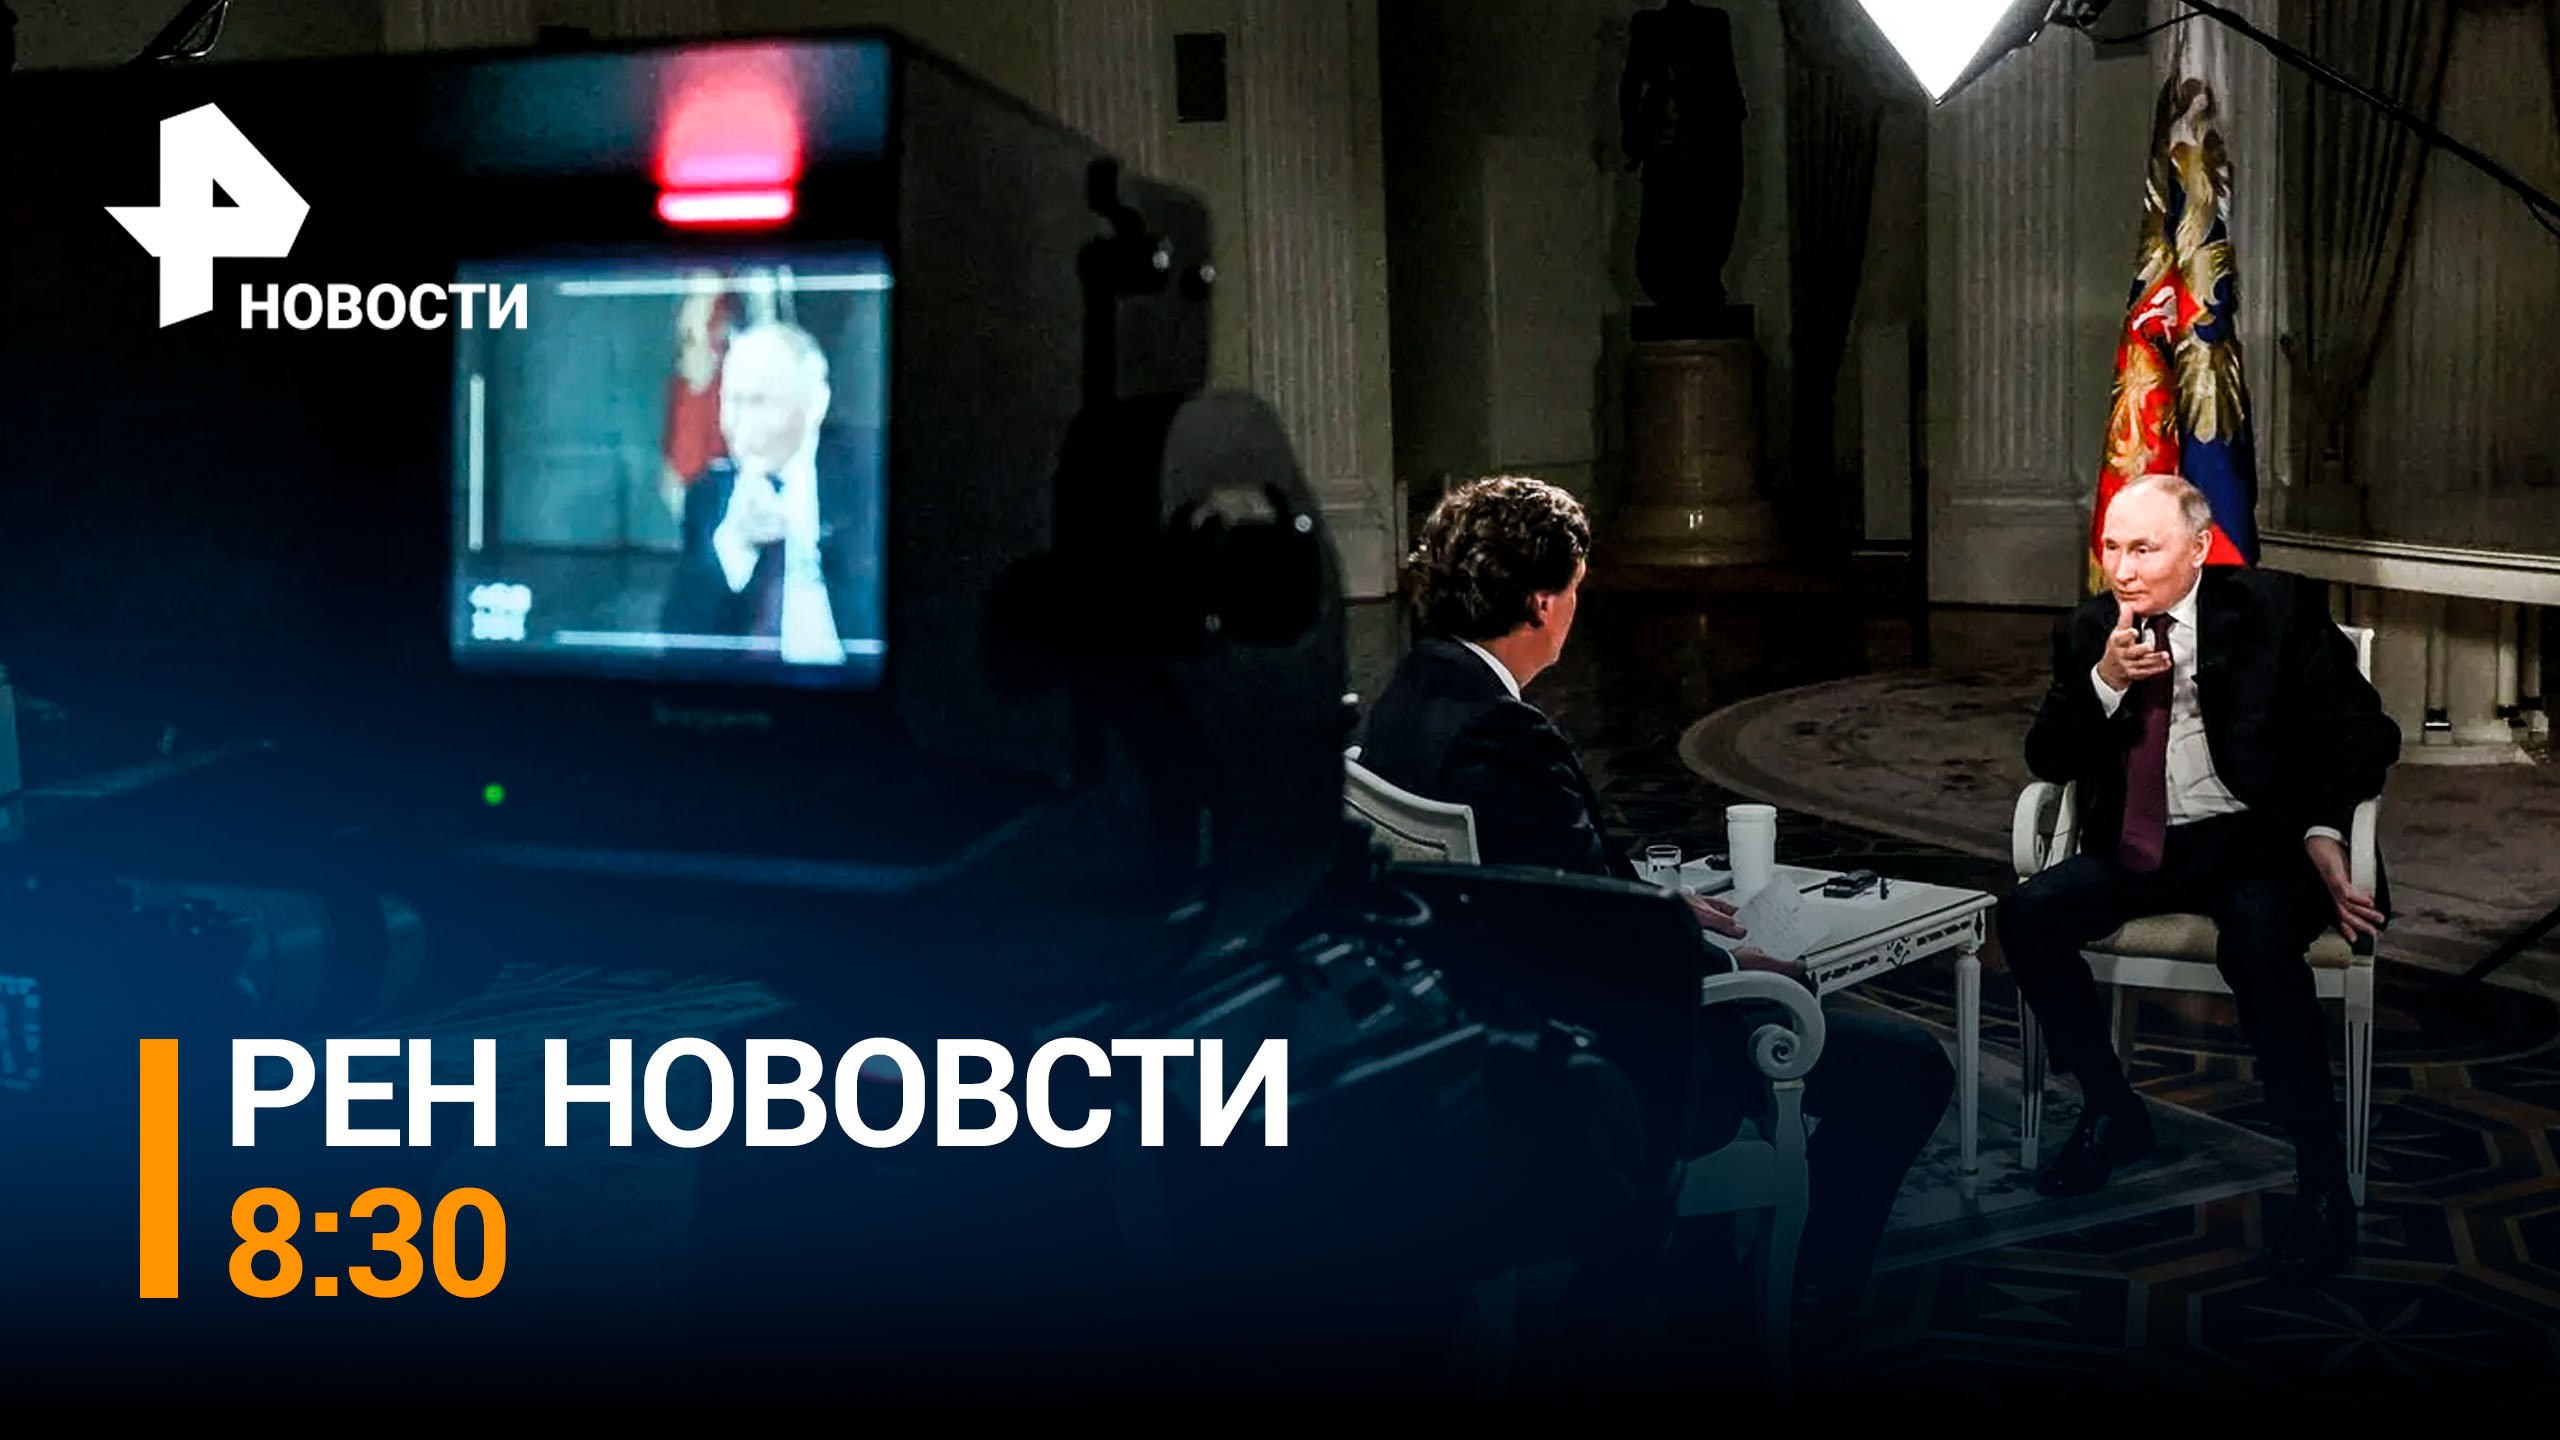 Интервью с Путиным: прямой и откровенный разговор, который многим позволит открыть глаза / РЕН